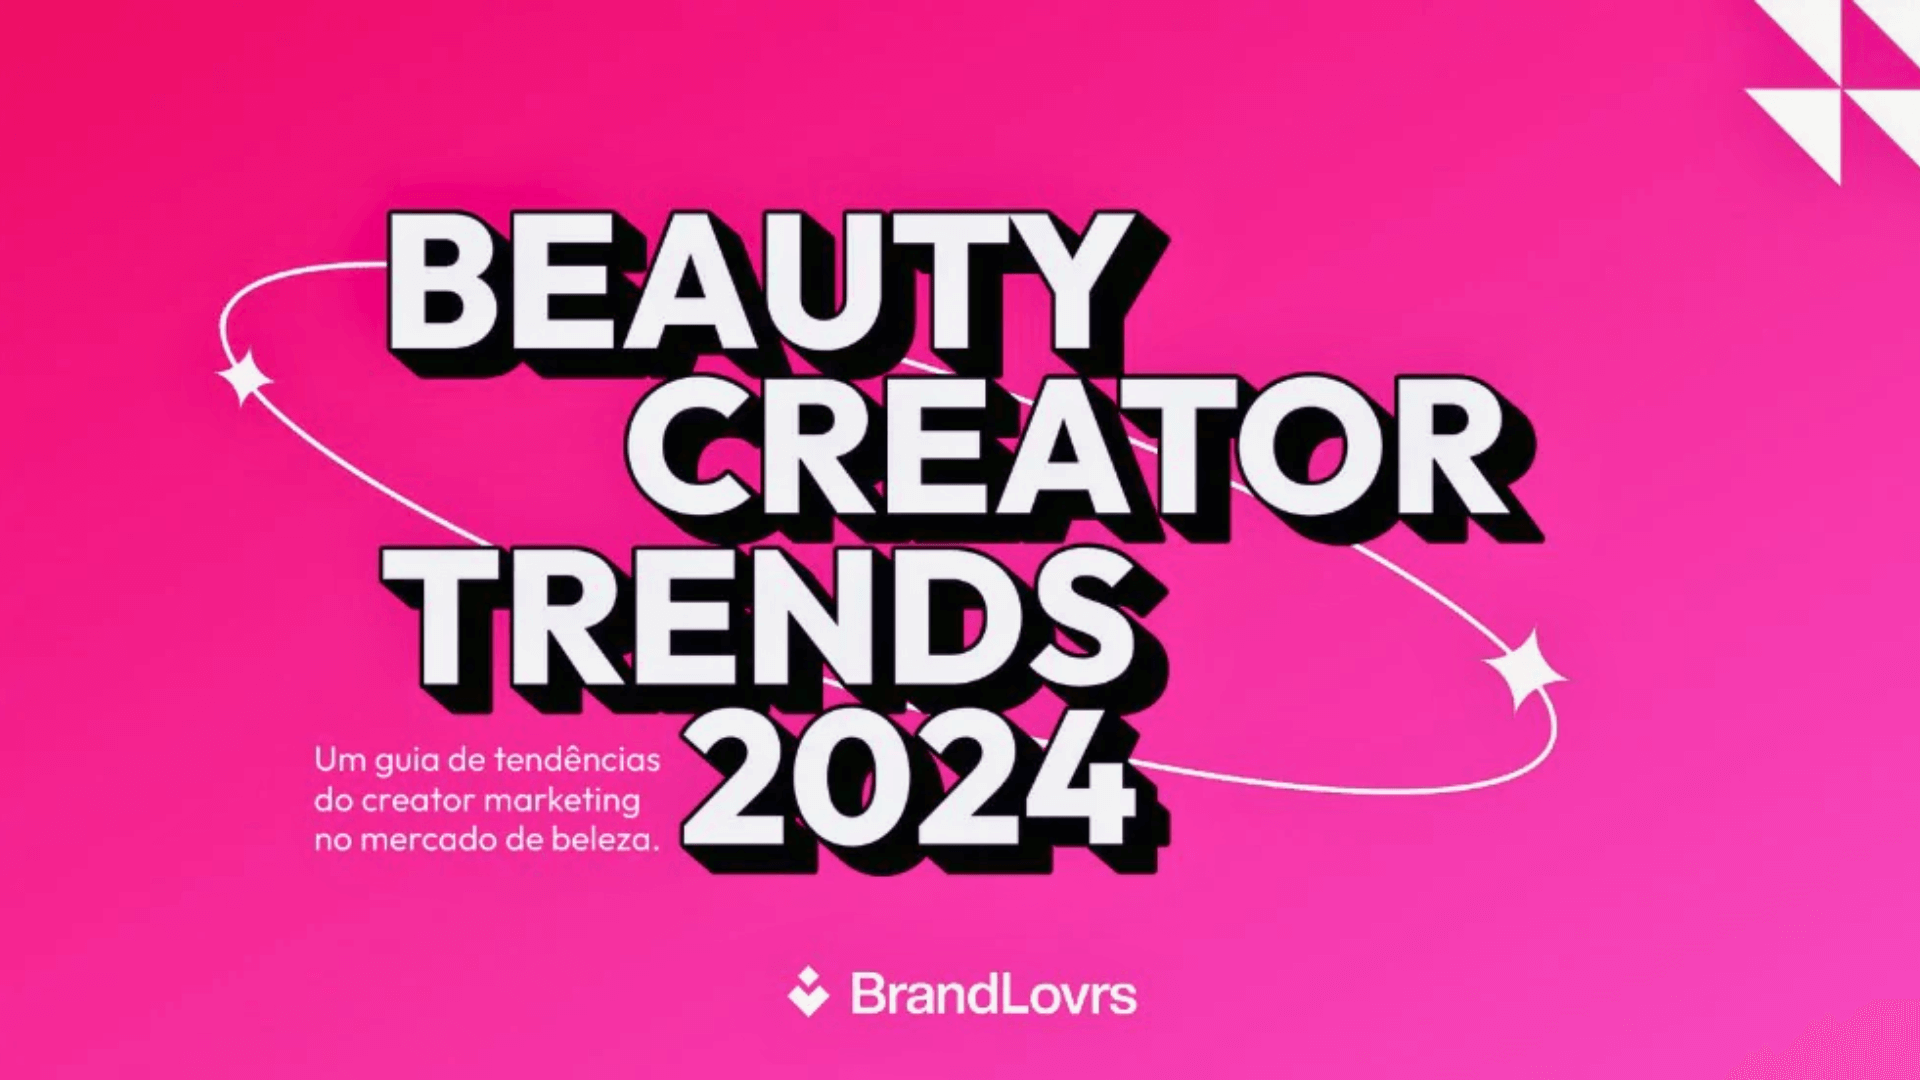 BrandLovrs revela insights e tendências no mercado de beleza brasileiro em 2024